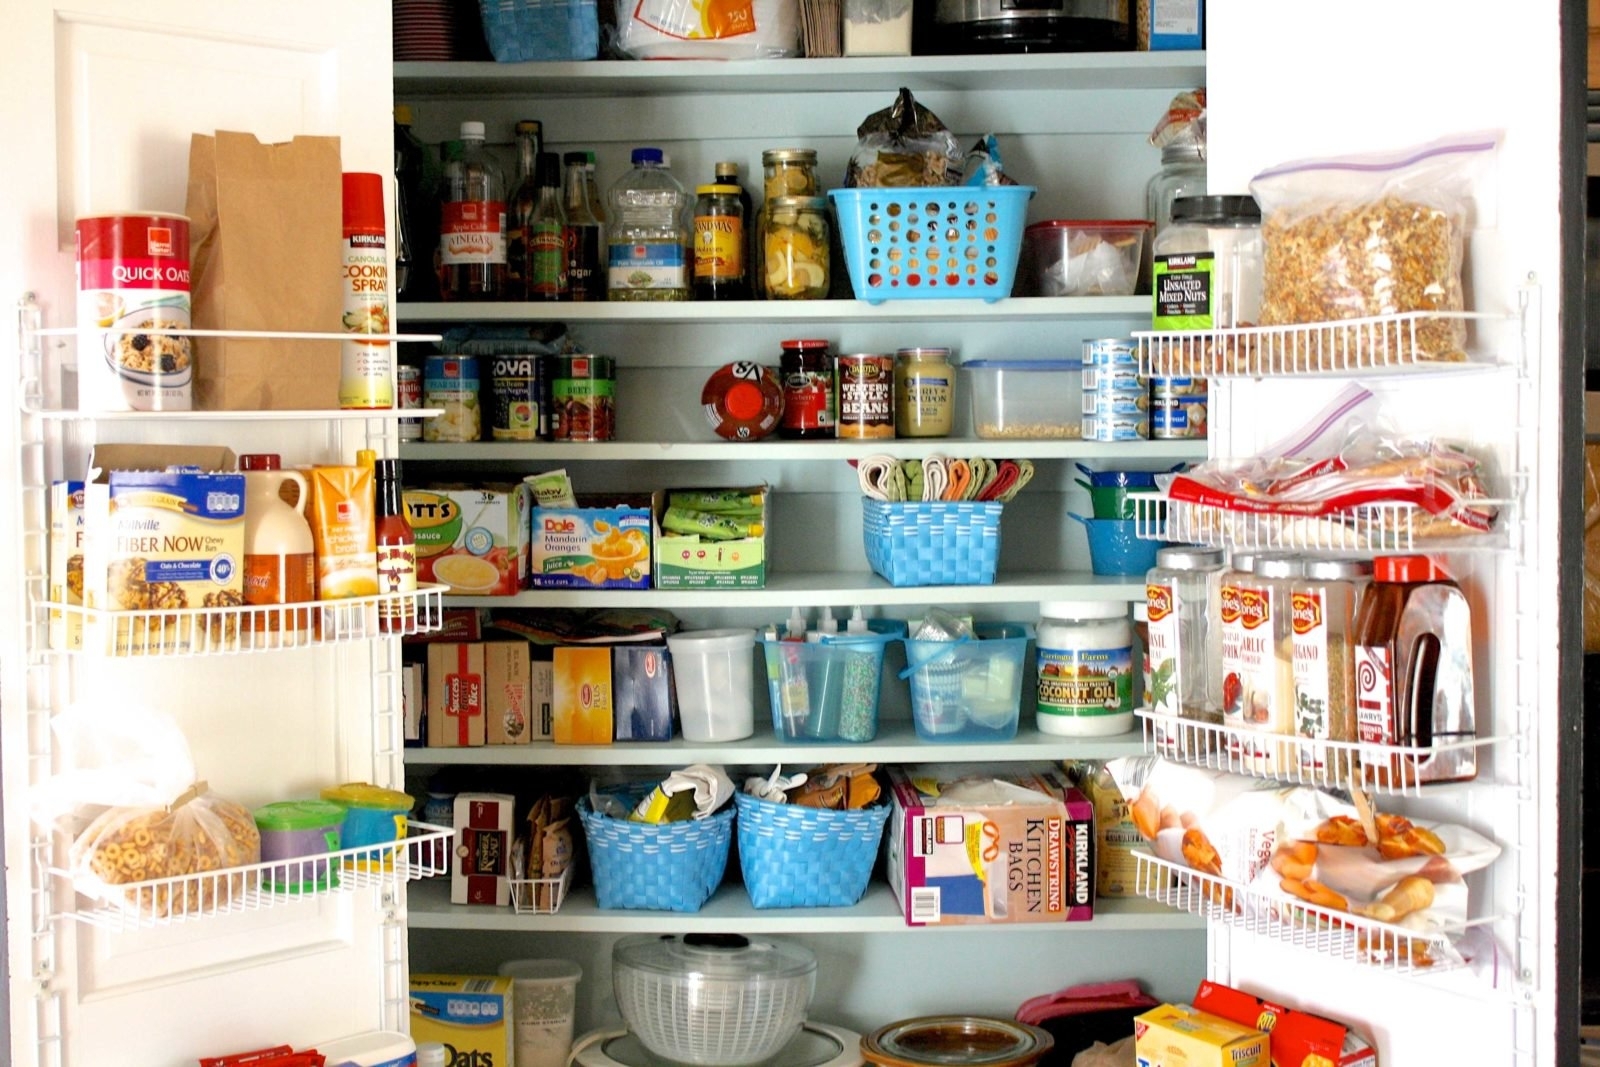 Organizing Small Kitchen Pantry